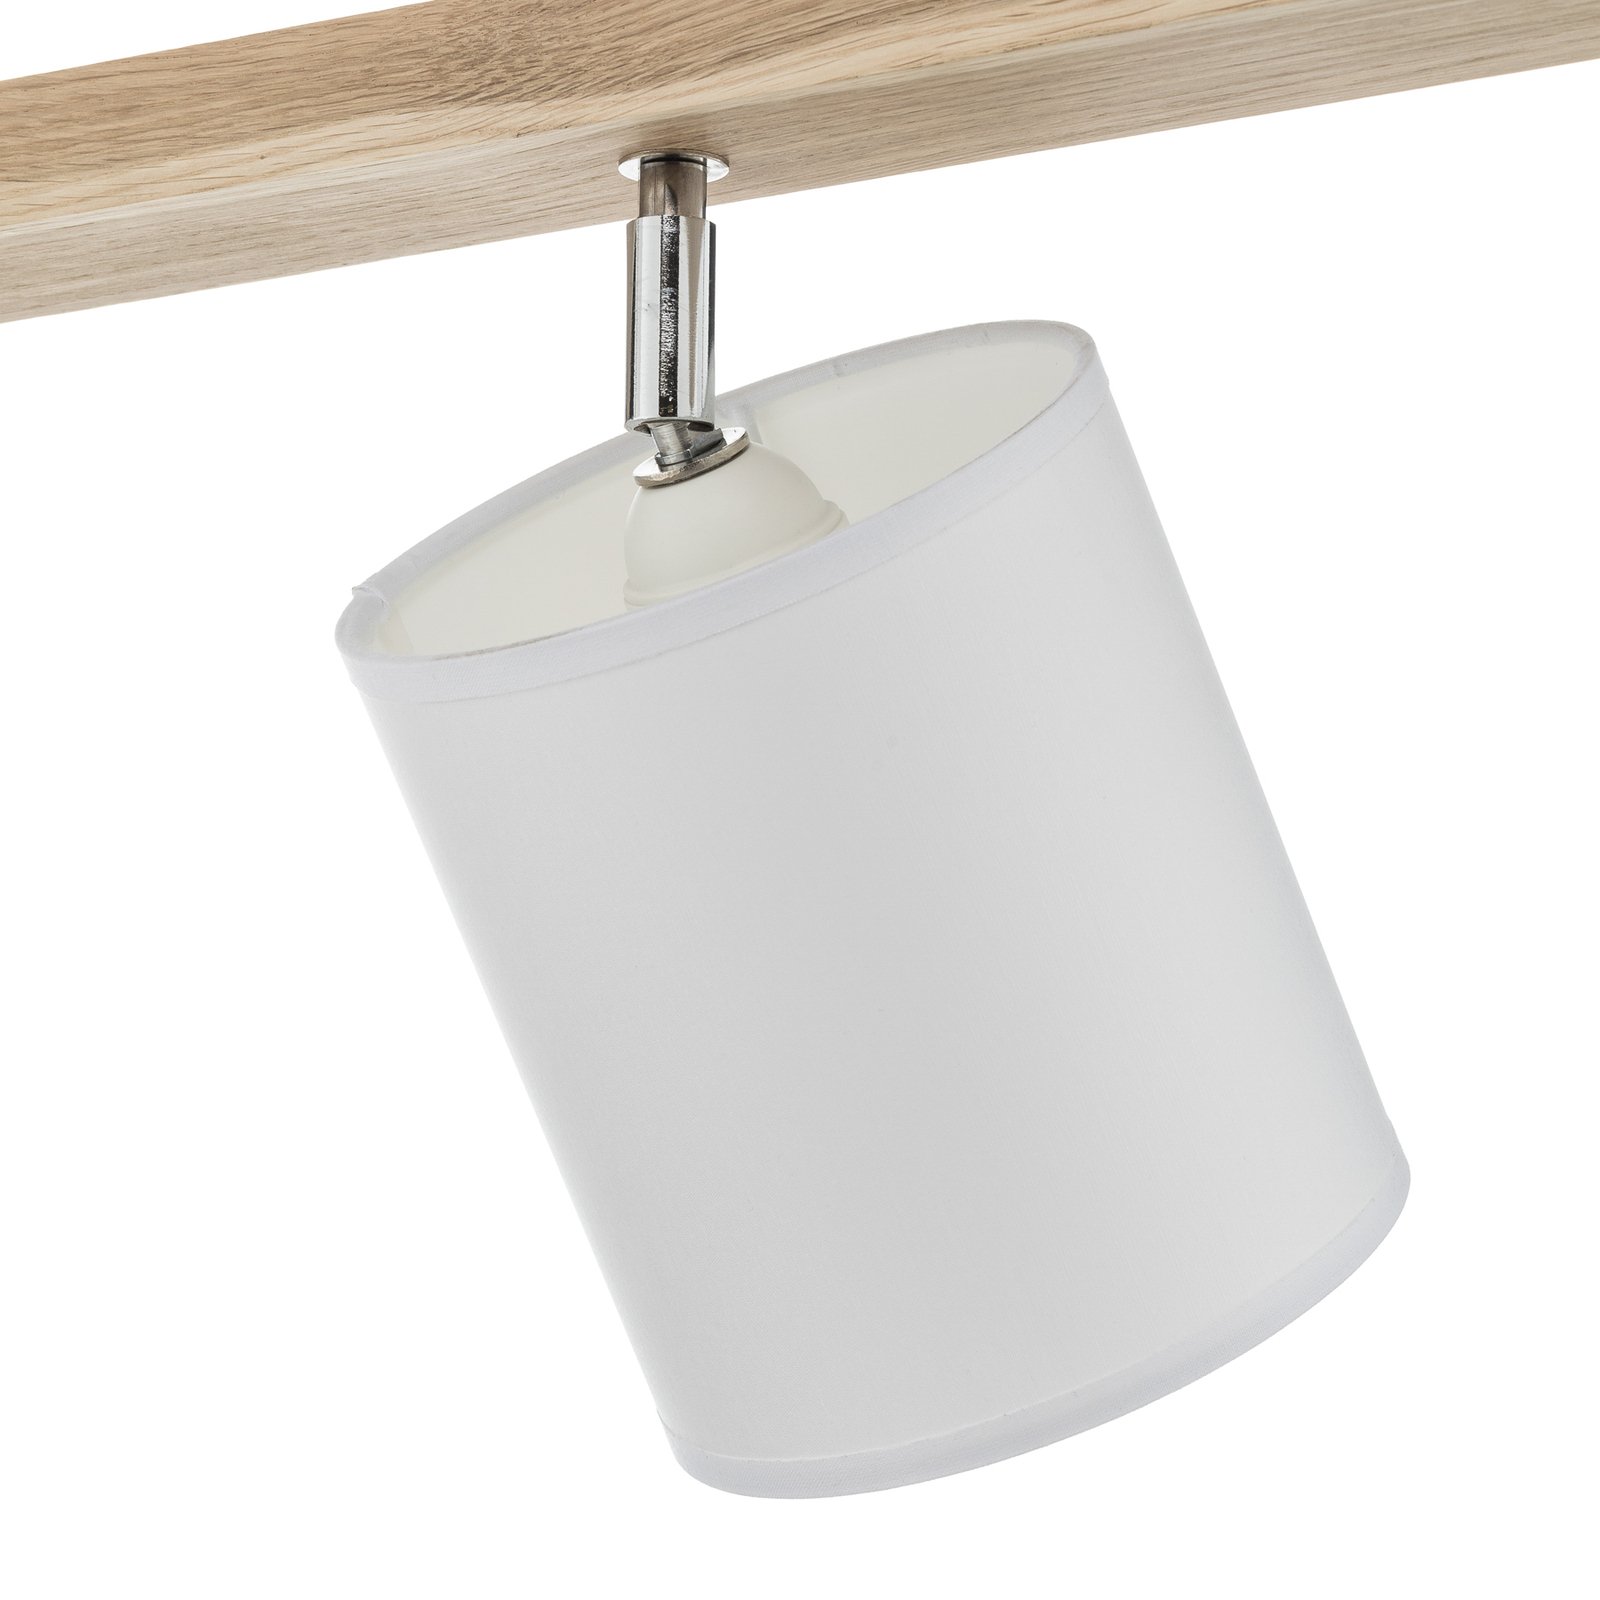 Spot pour plafond Corralee blanc linéaire 4 lampes